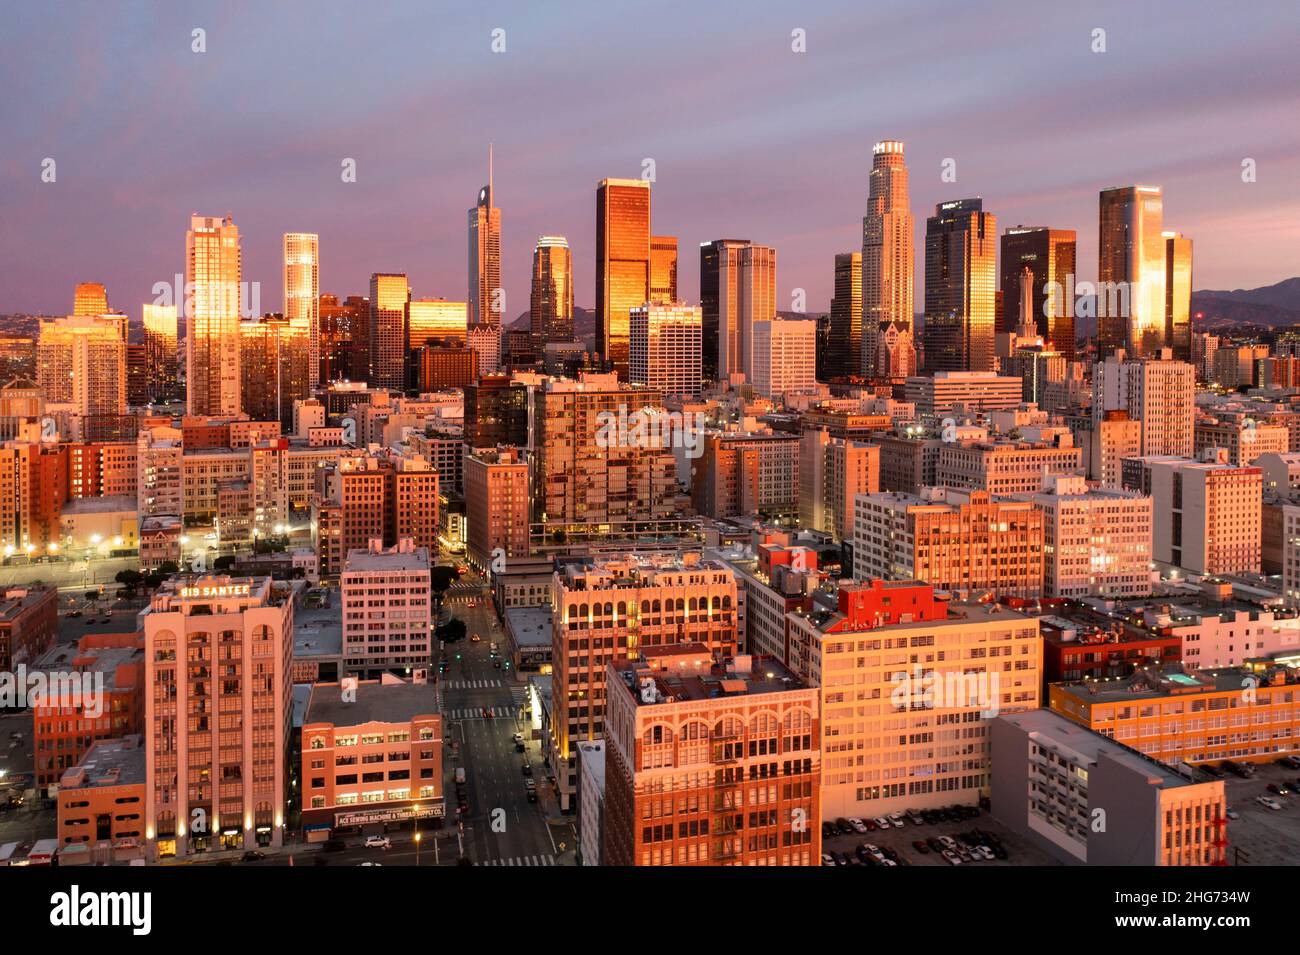 Vista aérea del horizonte de un increíble amanecer que refleja rosa y oro en los edificios del centro de Los Ángeles Foto de stock